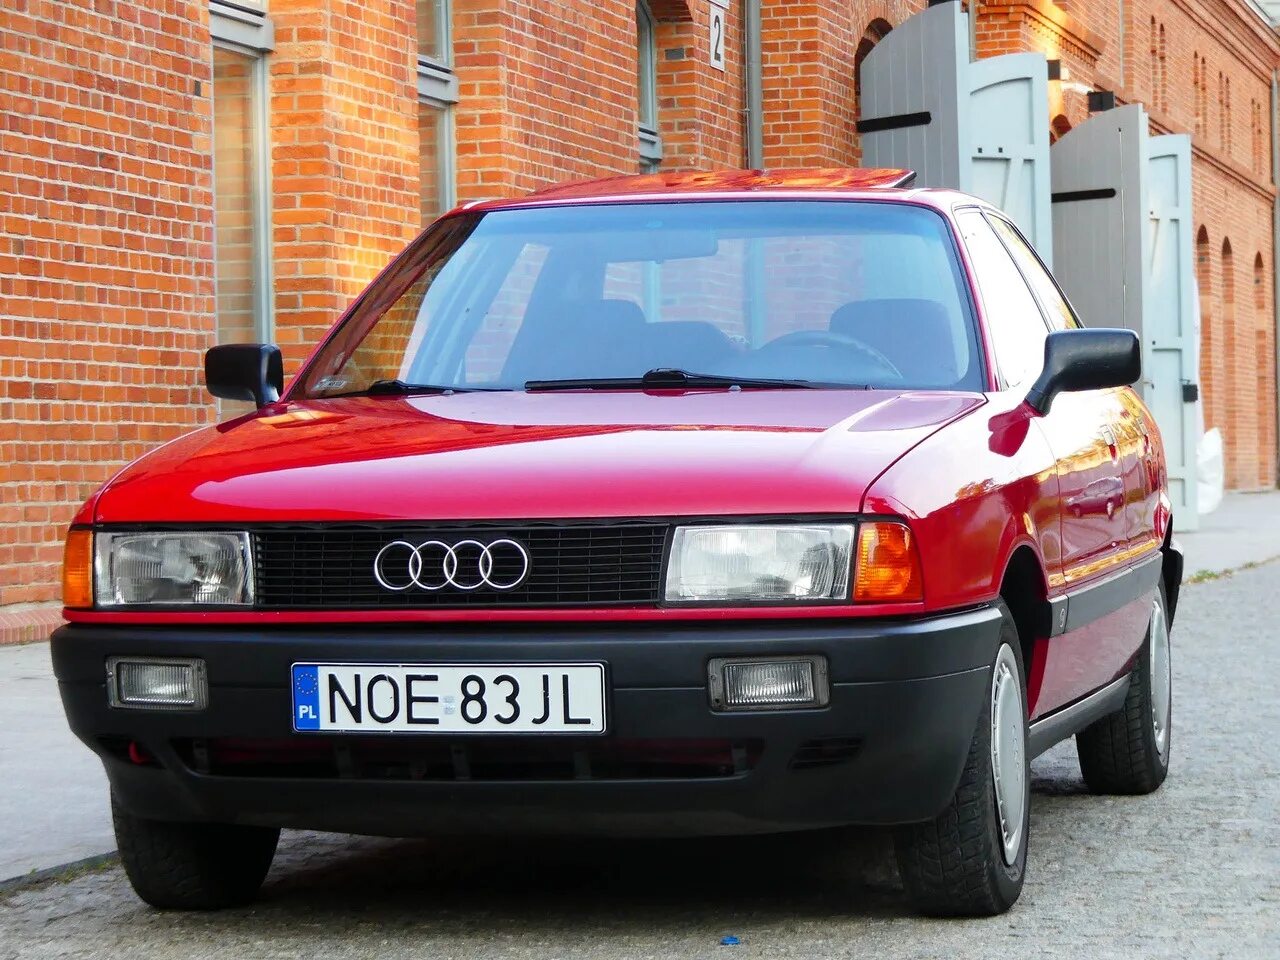 Audi 80 b3 1991. Audi 80 b3 RS. Аудио 80. Ауди 80 в3.